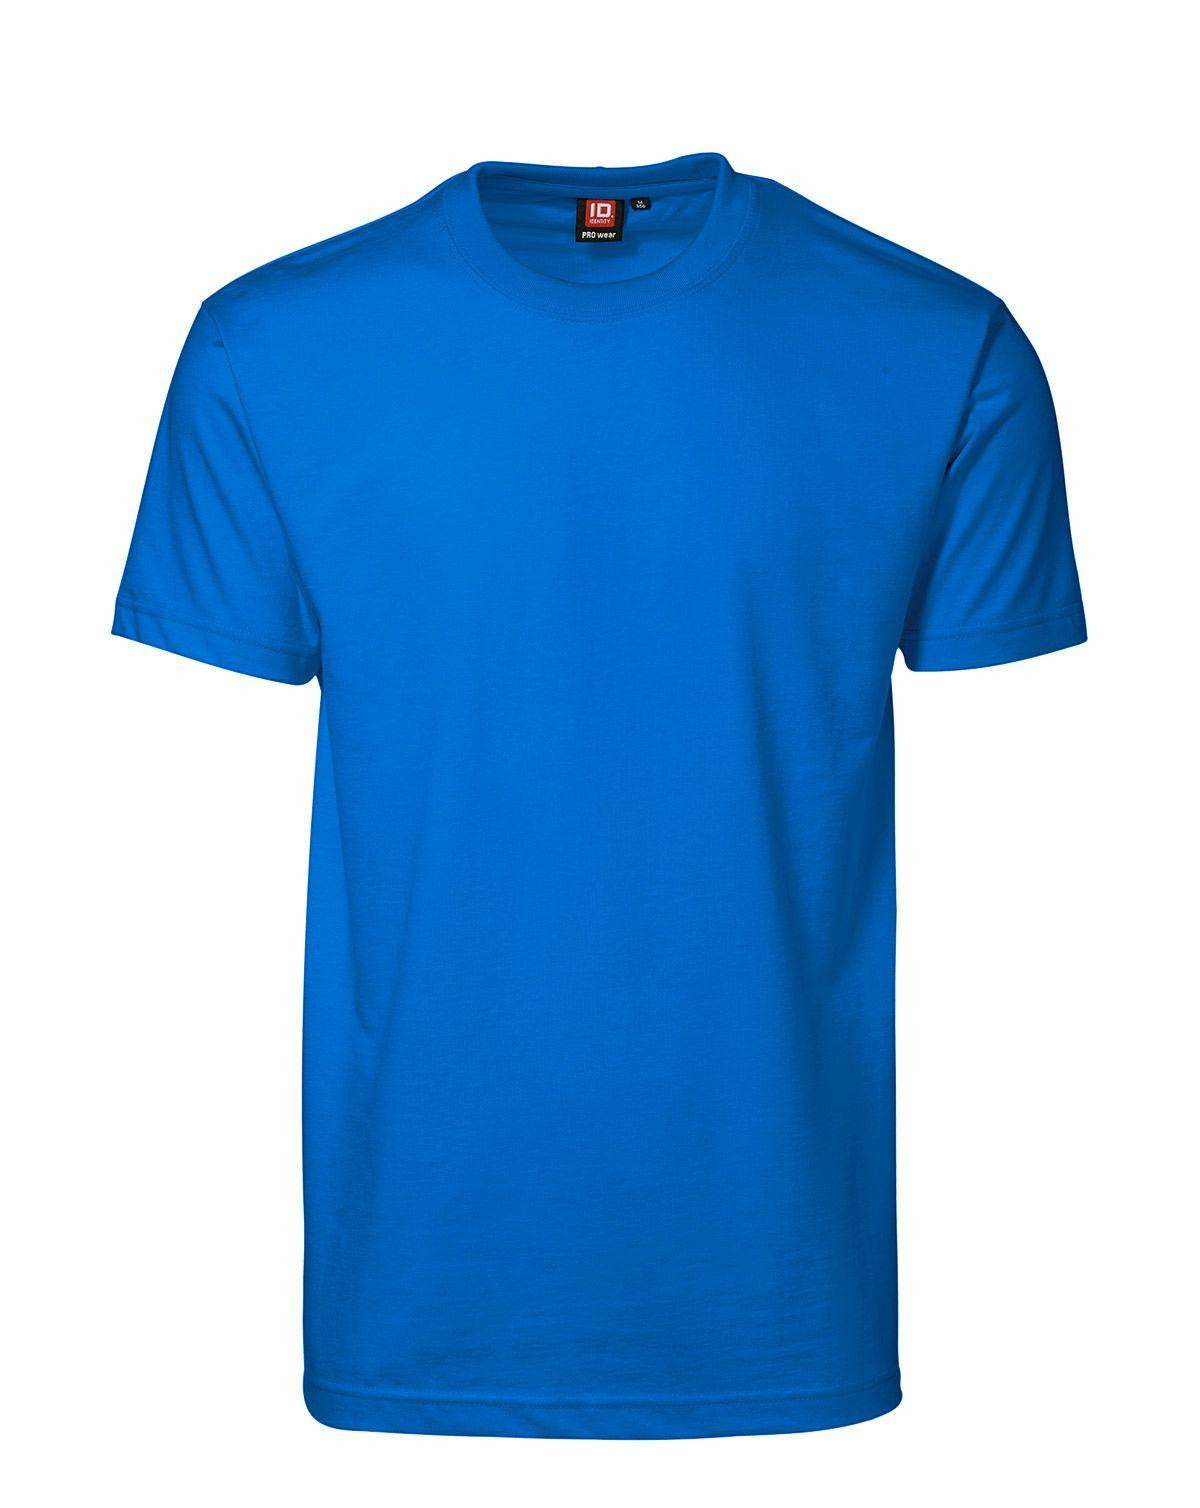 ID PRO Wear T-shirt til Herre (Azure, 5XL)